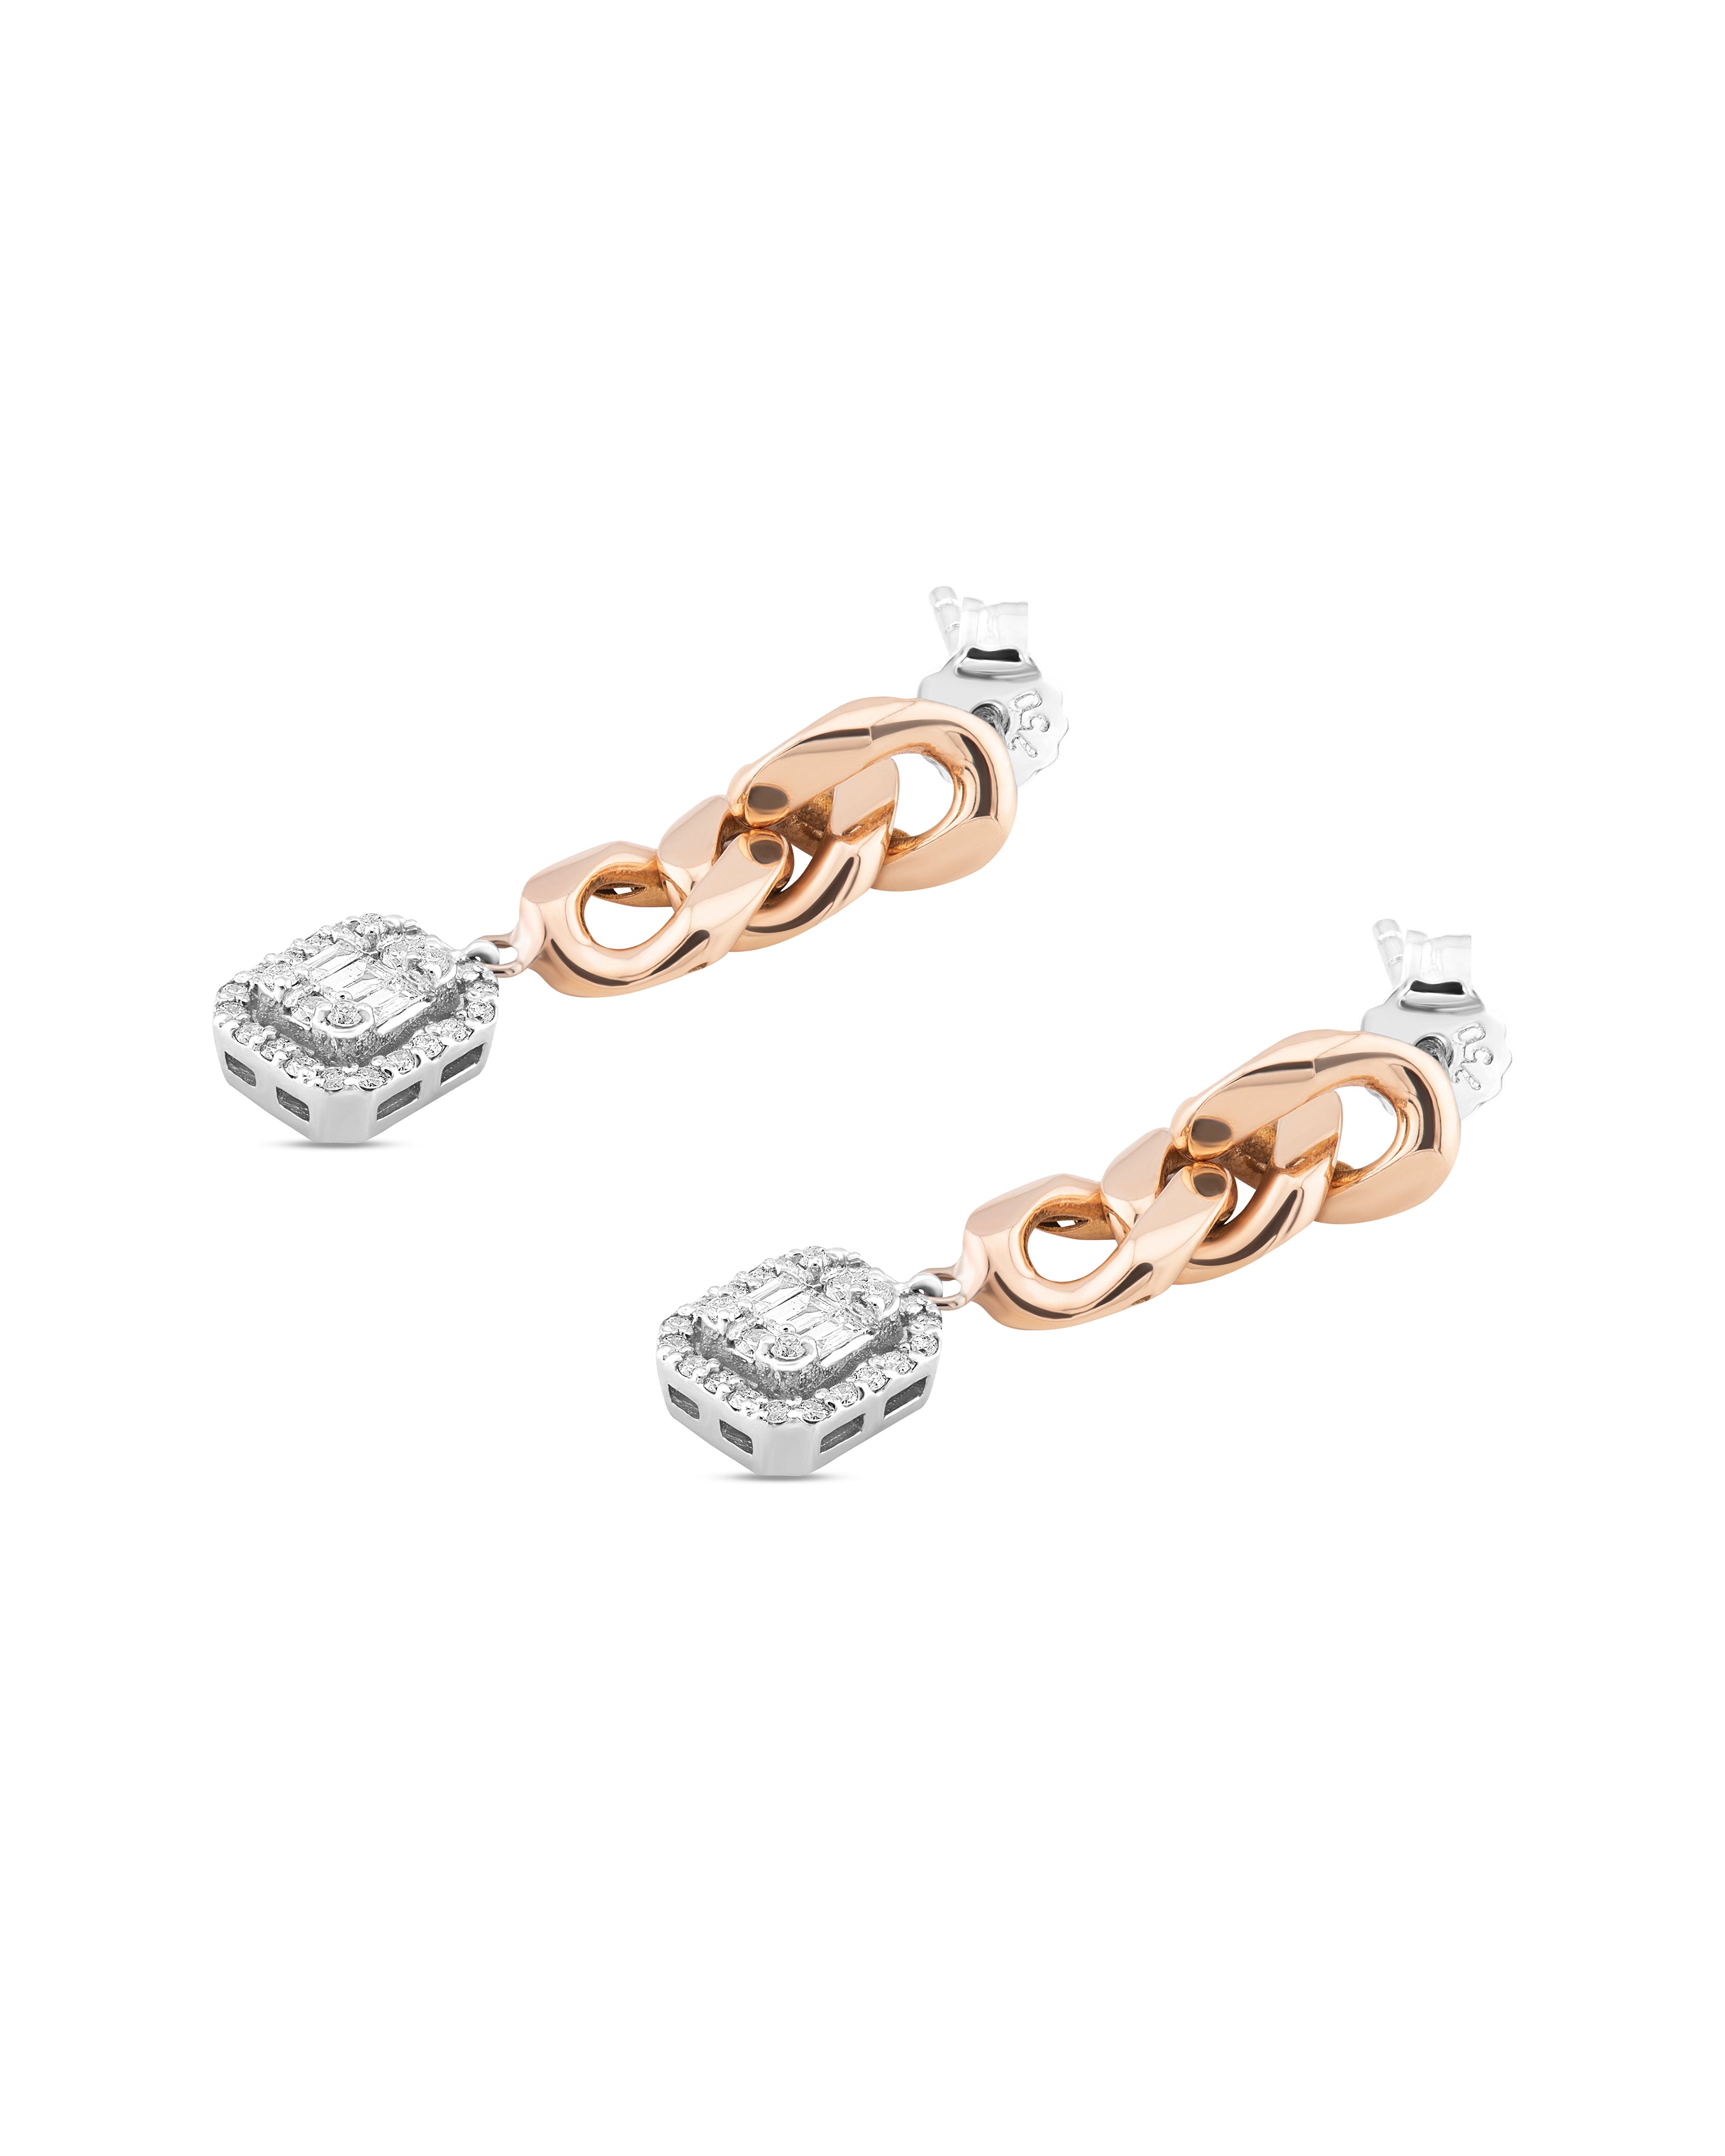 AMORE - Swirling Chain Earrings